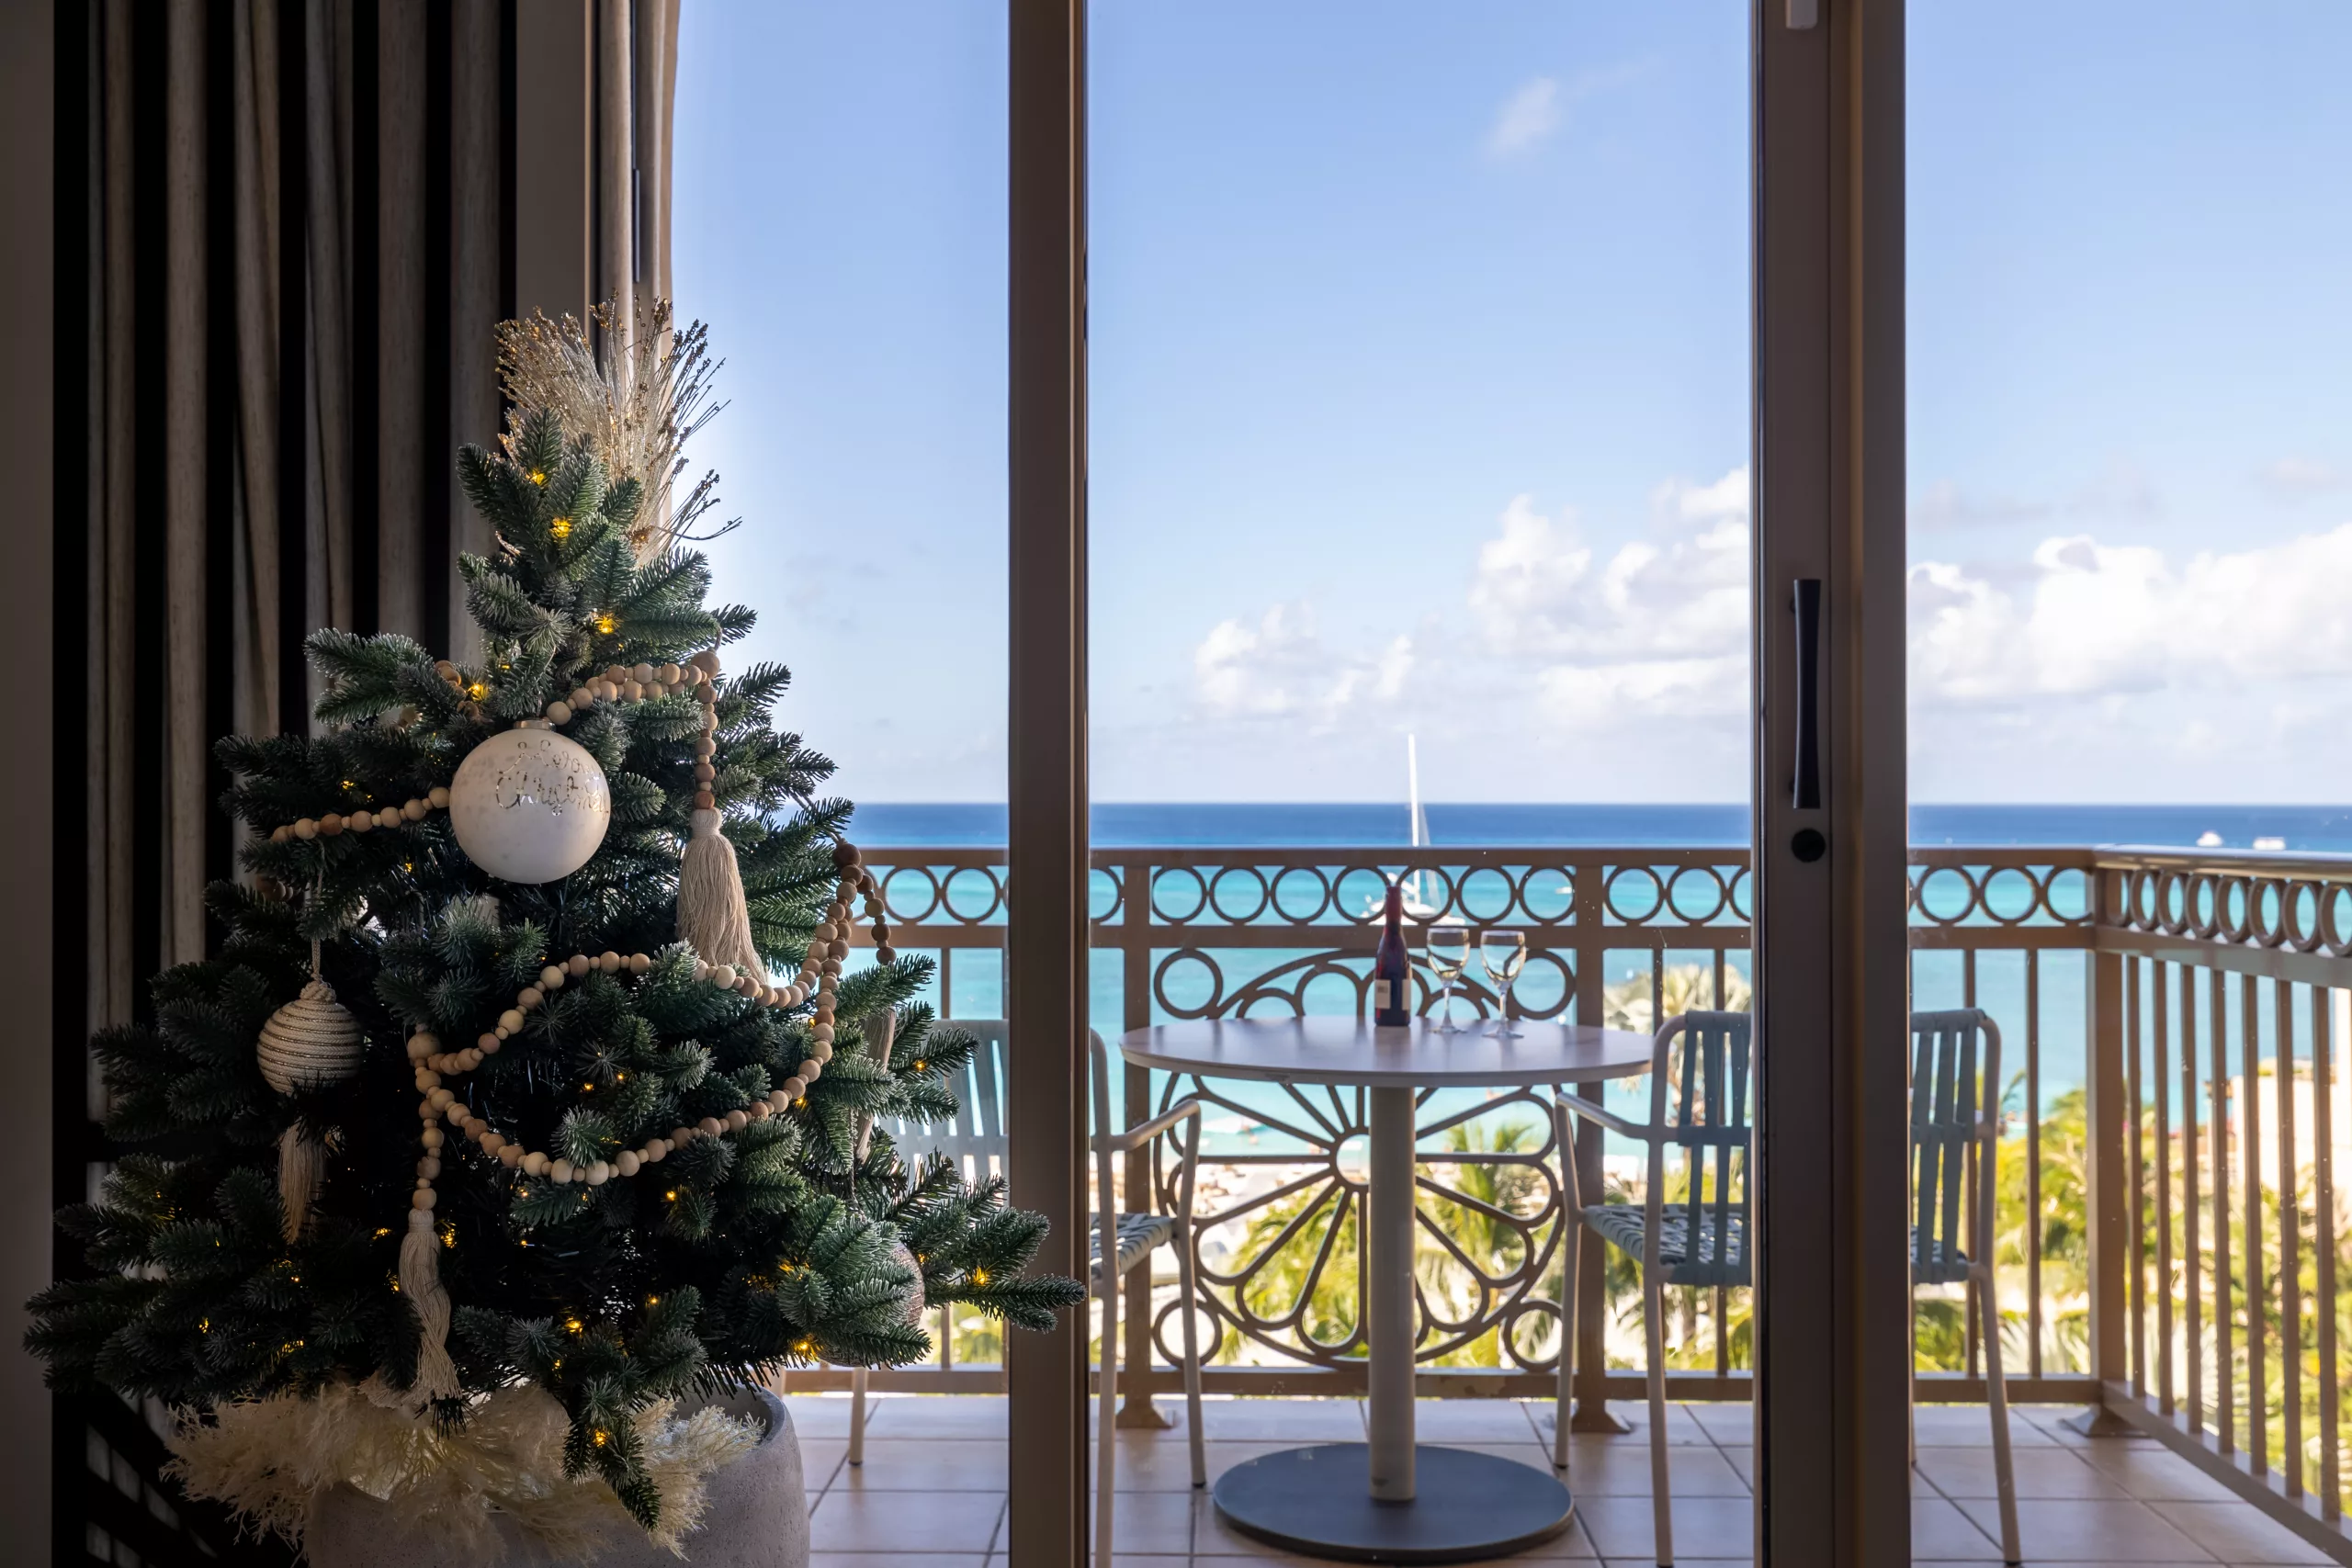 A Winter Wonderland Awaits at The Ritz-Carlton, Grand Cayman This Holiday Season